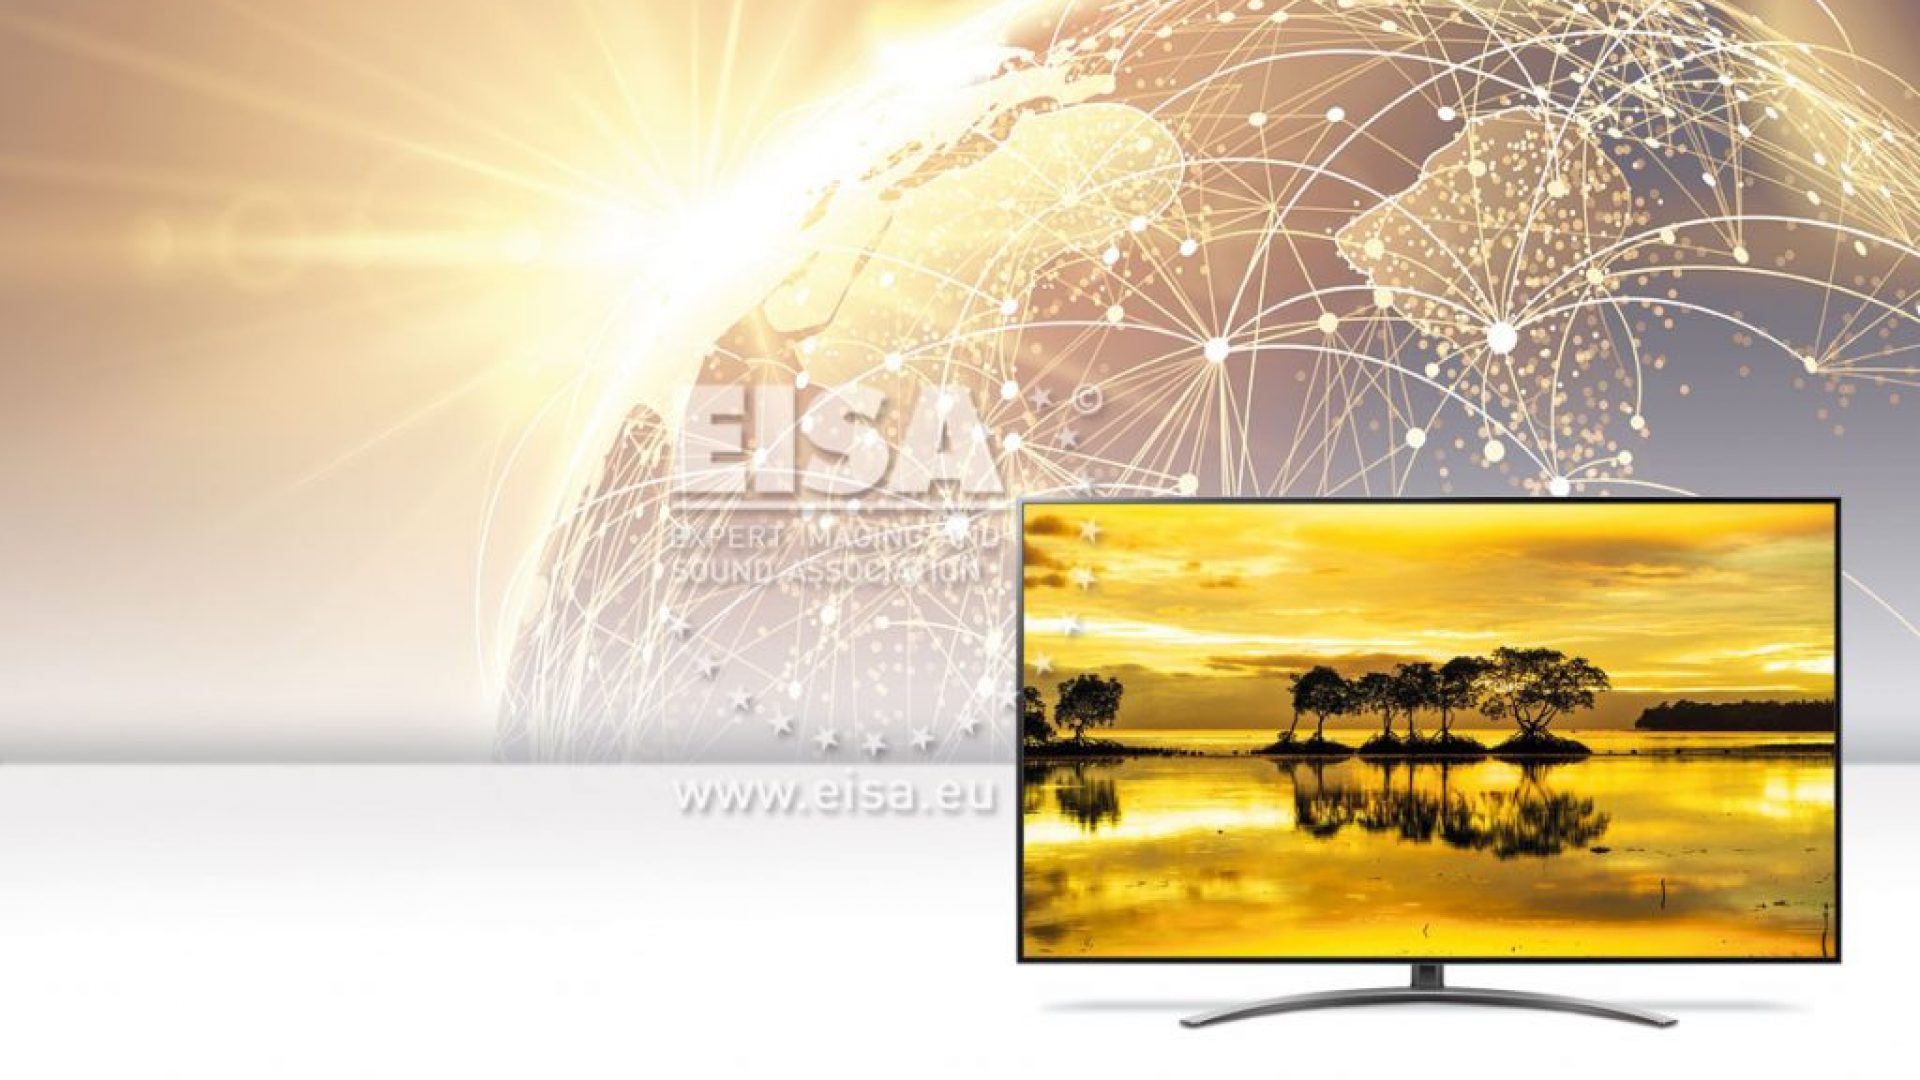 LG 65SM9010 – EISA La mejor compra en categoría Smart Home TV – 2019-2020